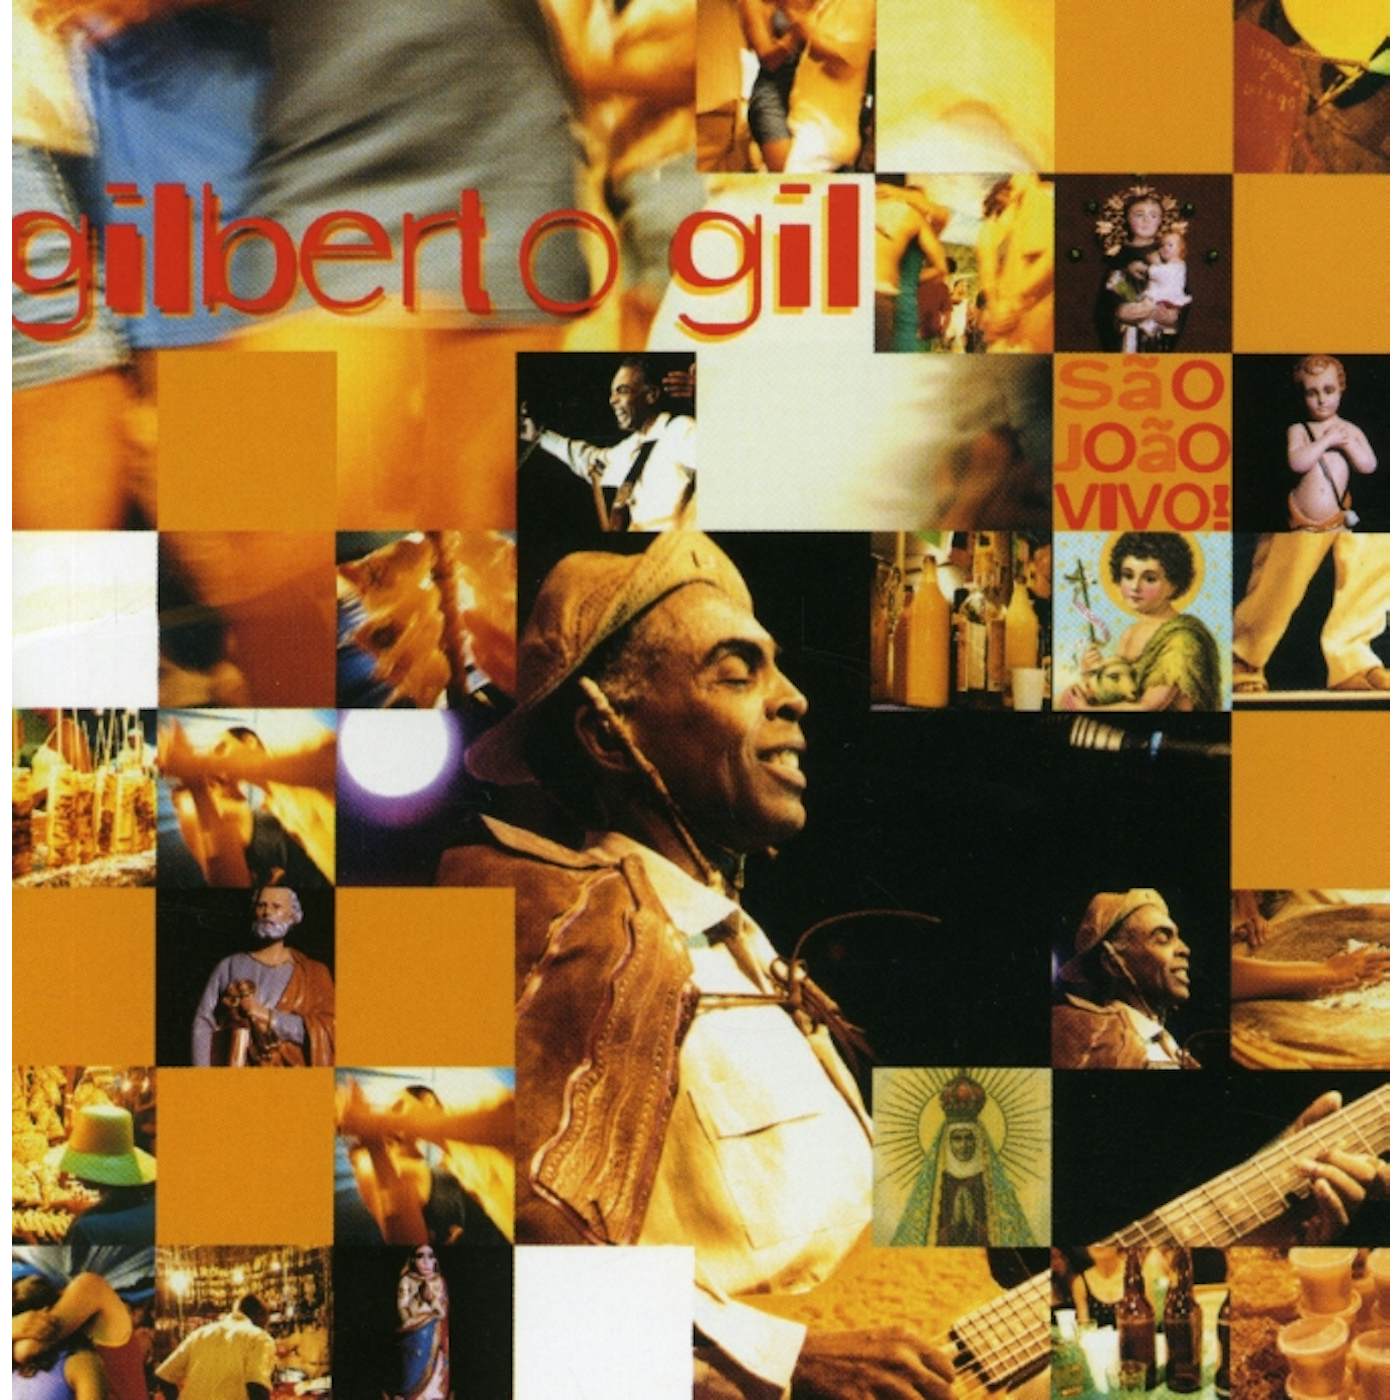 Gilberto Gil SAO JOAO VIVO CD